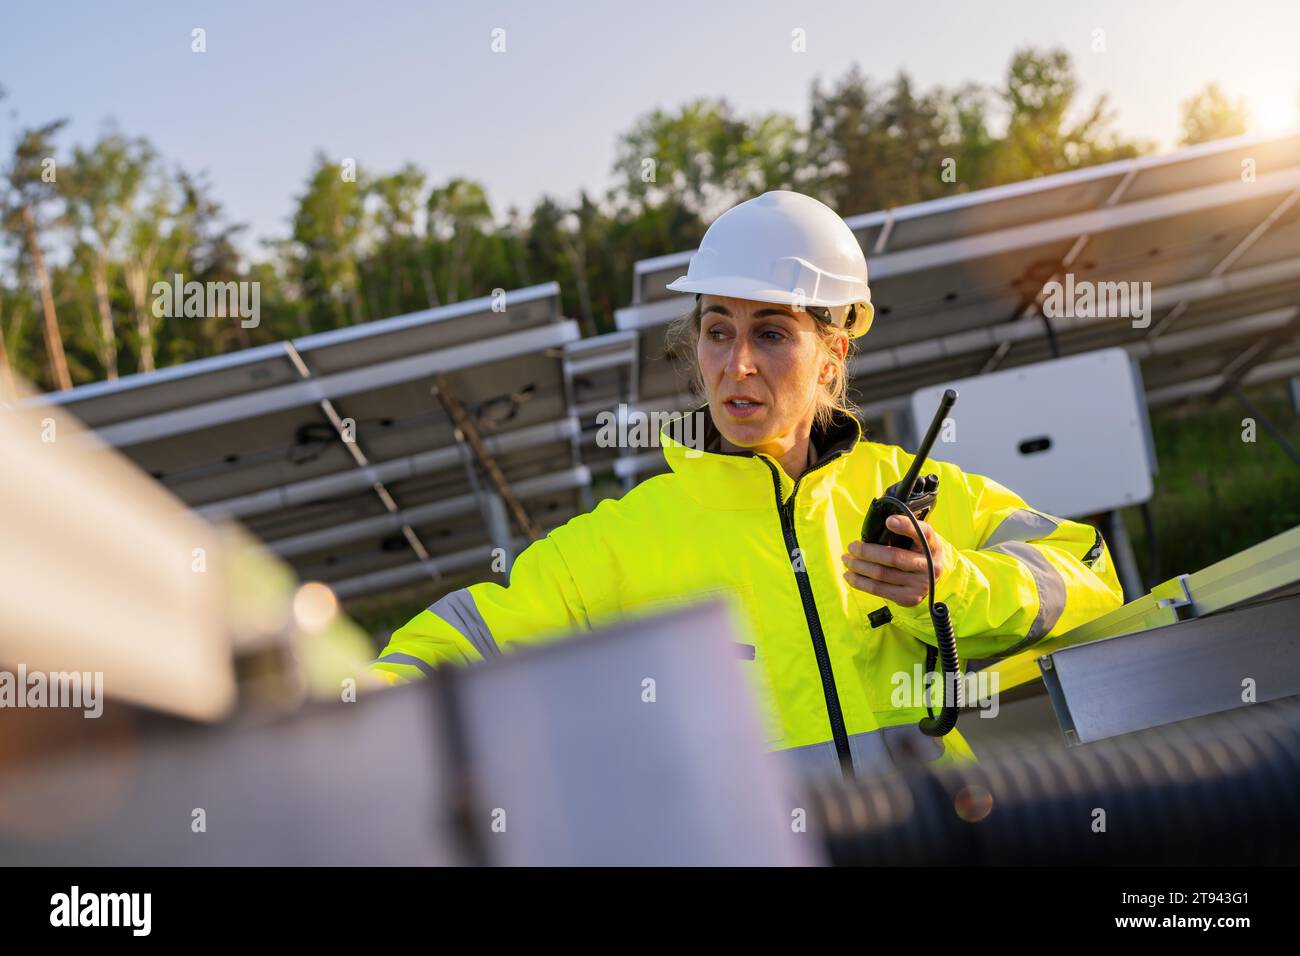 Solartechniker mit Walkie-Talkie überprüft Solarpanel im Solarpark. Alternatives energetisches ökologisches Konzeptbild. Stockfoto